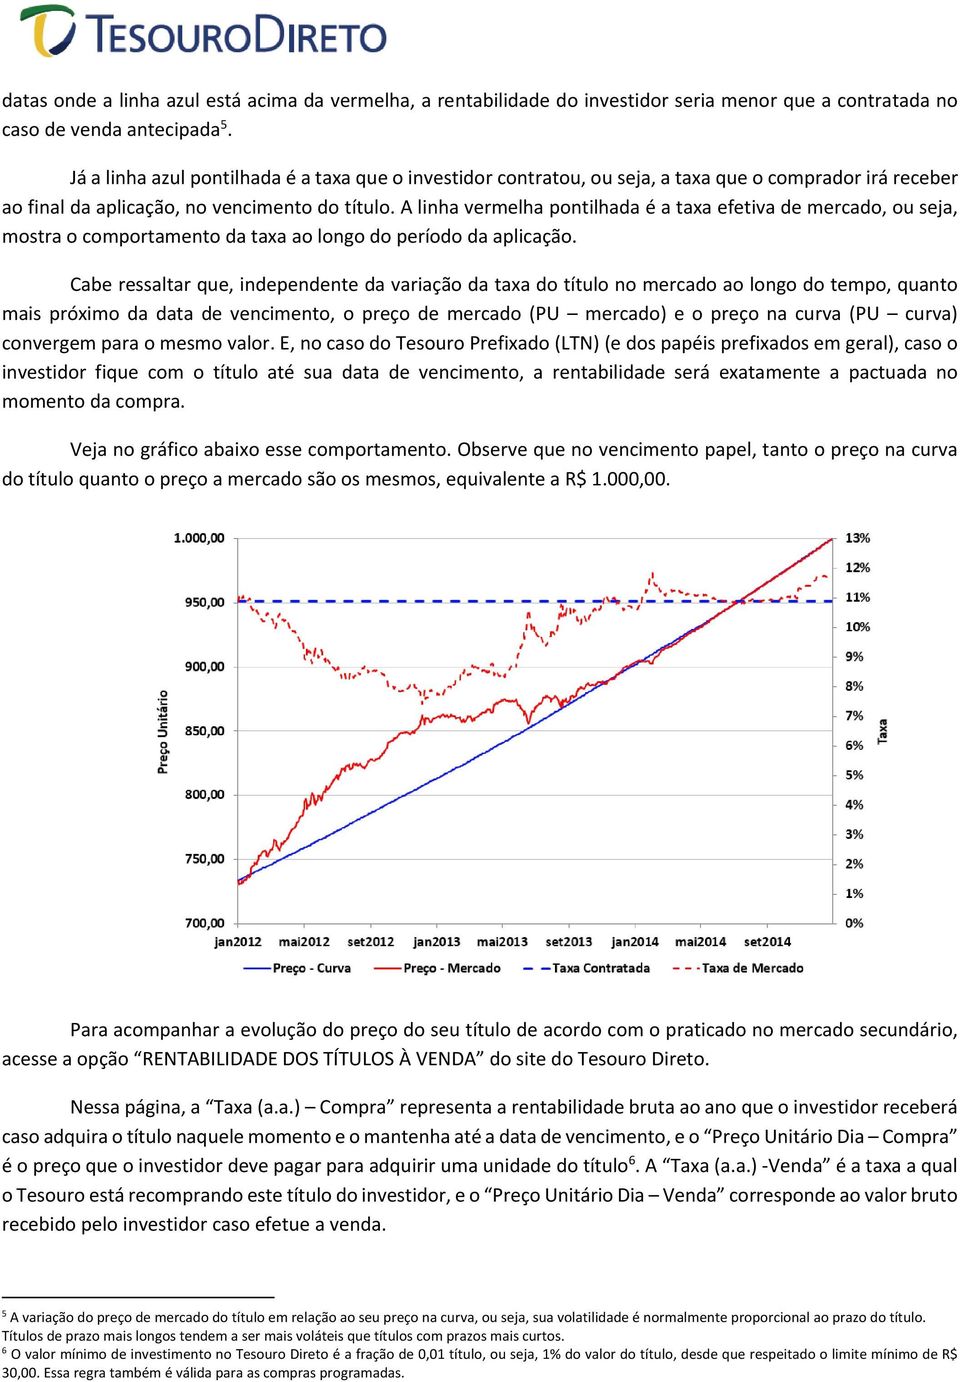 A linha vermelha pontilhada é a taxa efetiva de mercado, ou seja, mostra o comportamento da taxa ao longo do período da aplicação.